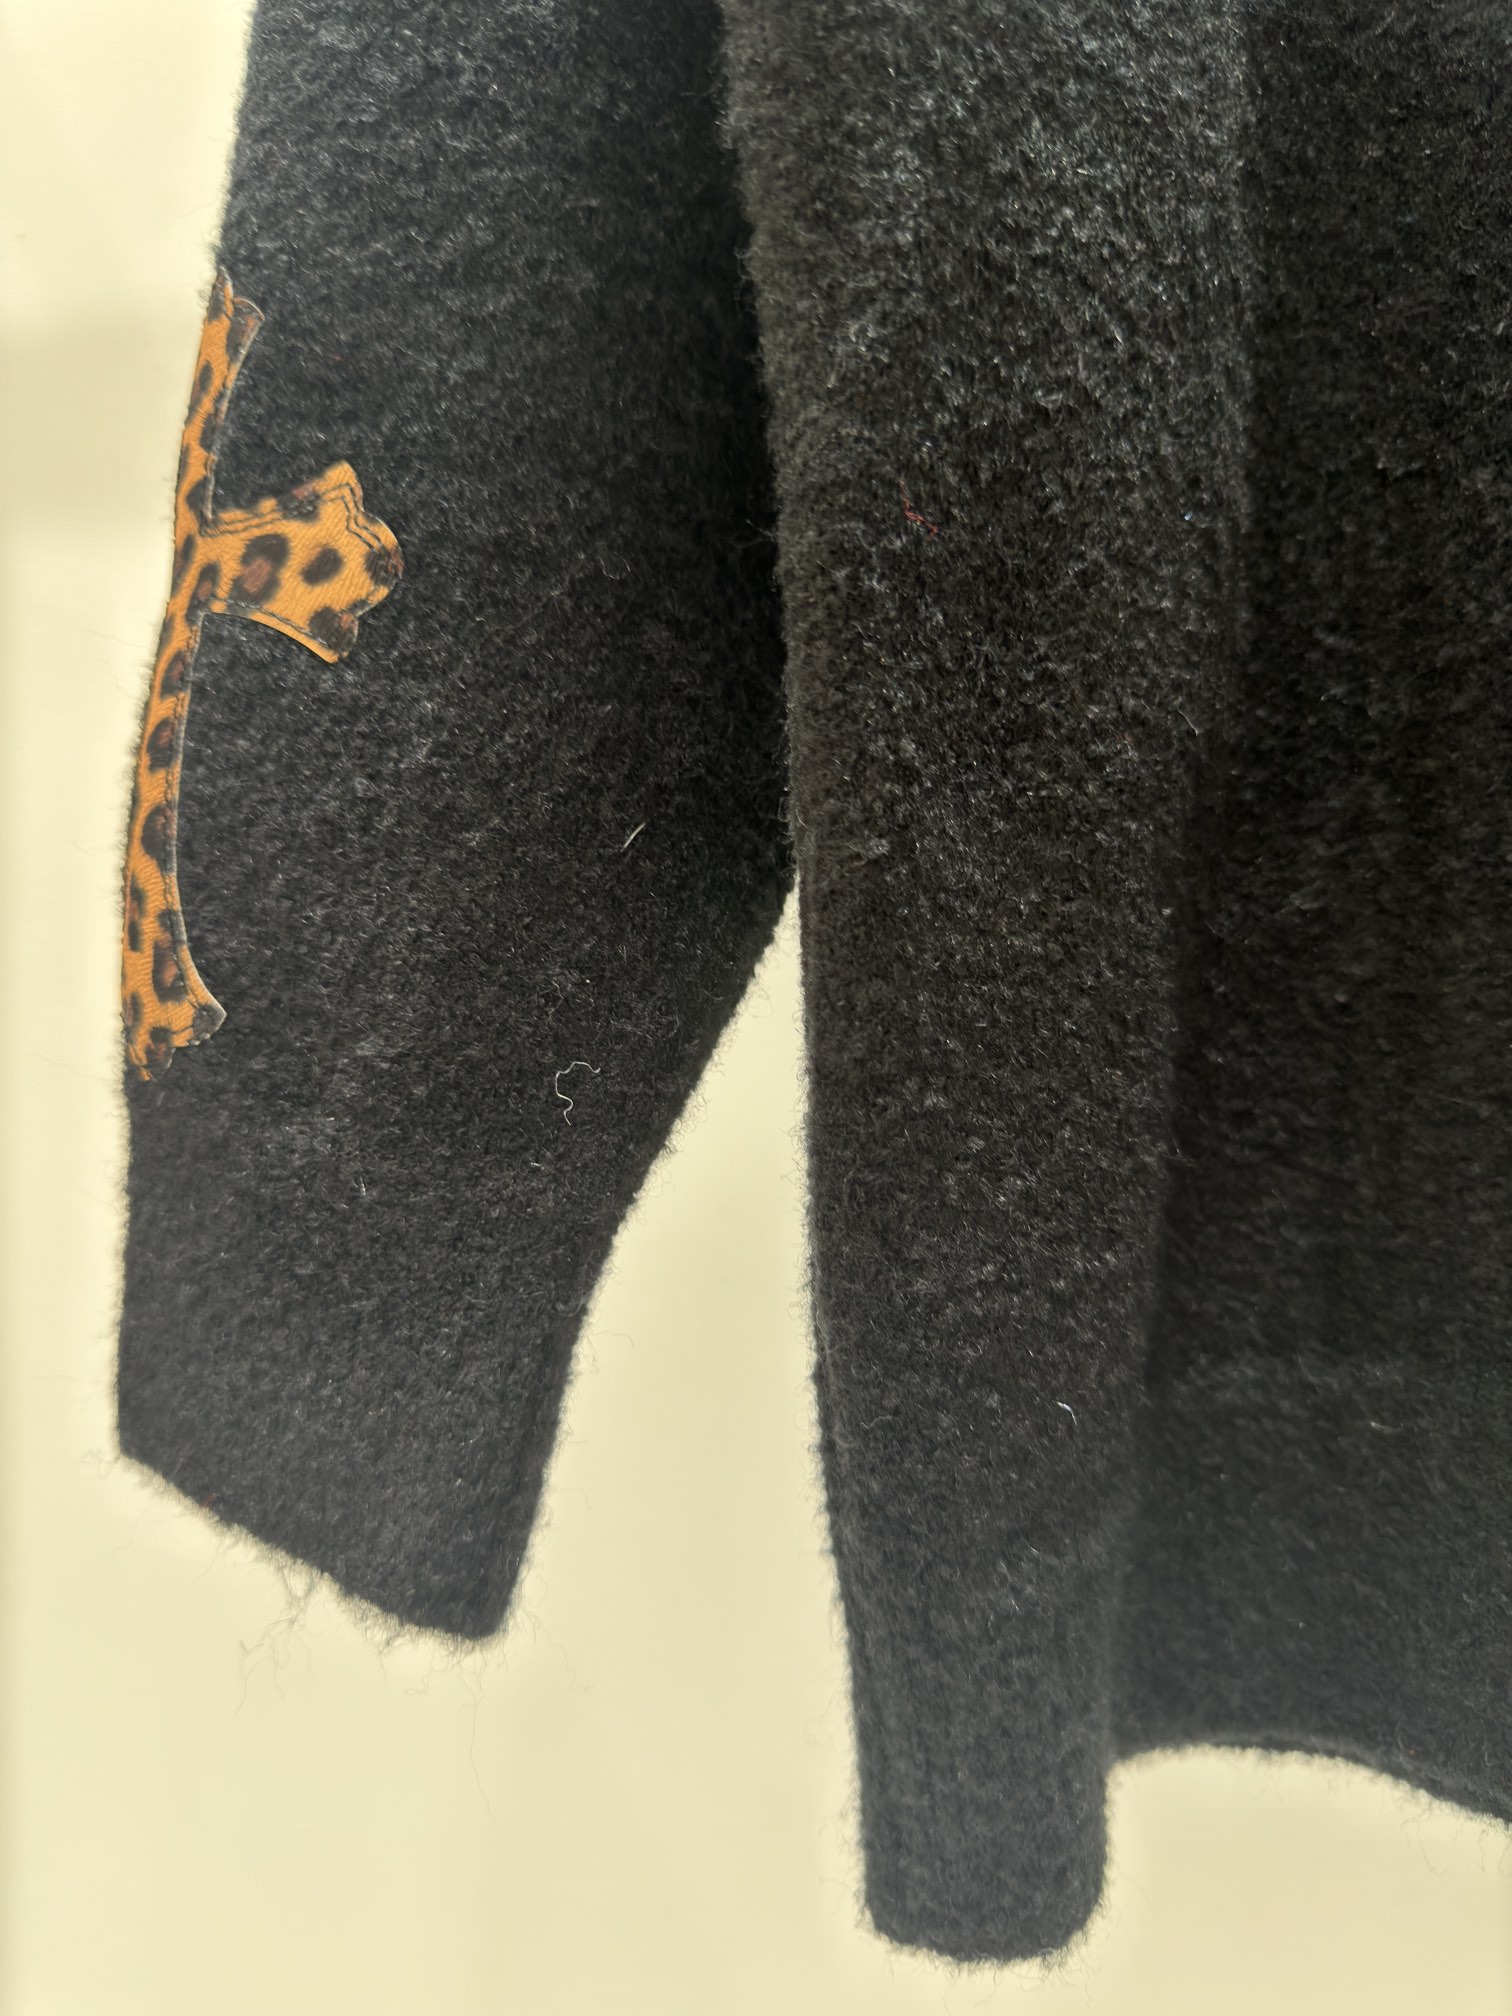 素敵なsmfk 通販スーパーコピー トップス 柔らかい ウール製作 暖かい 人気新作 2色可選 ブラック ホワイト_8